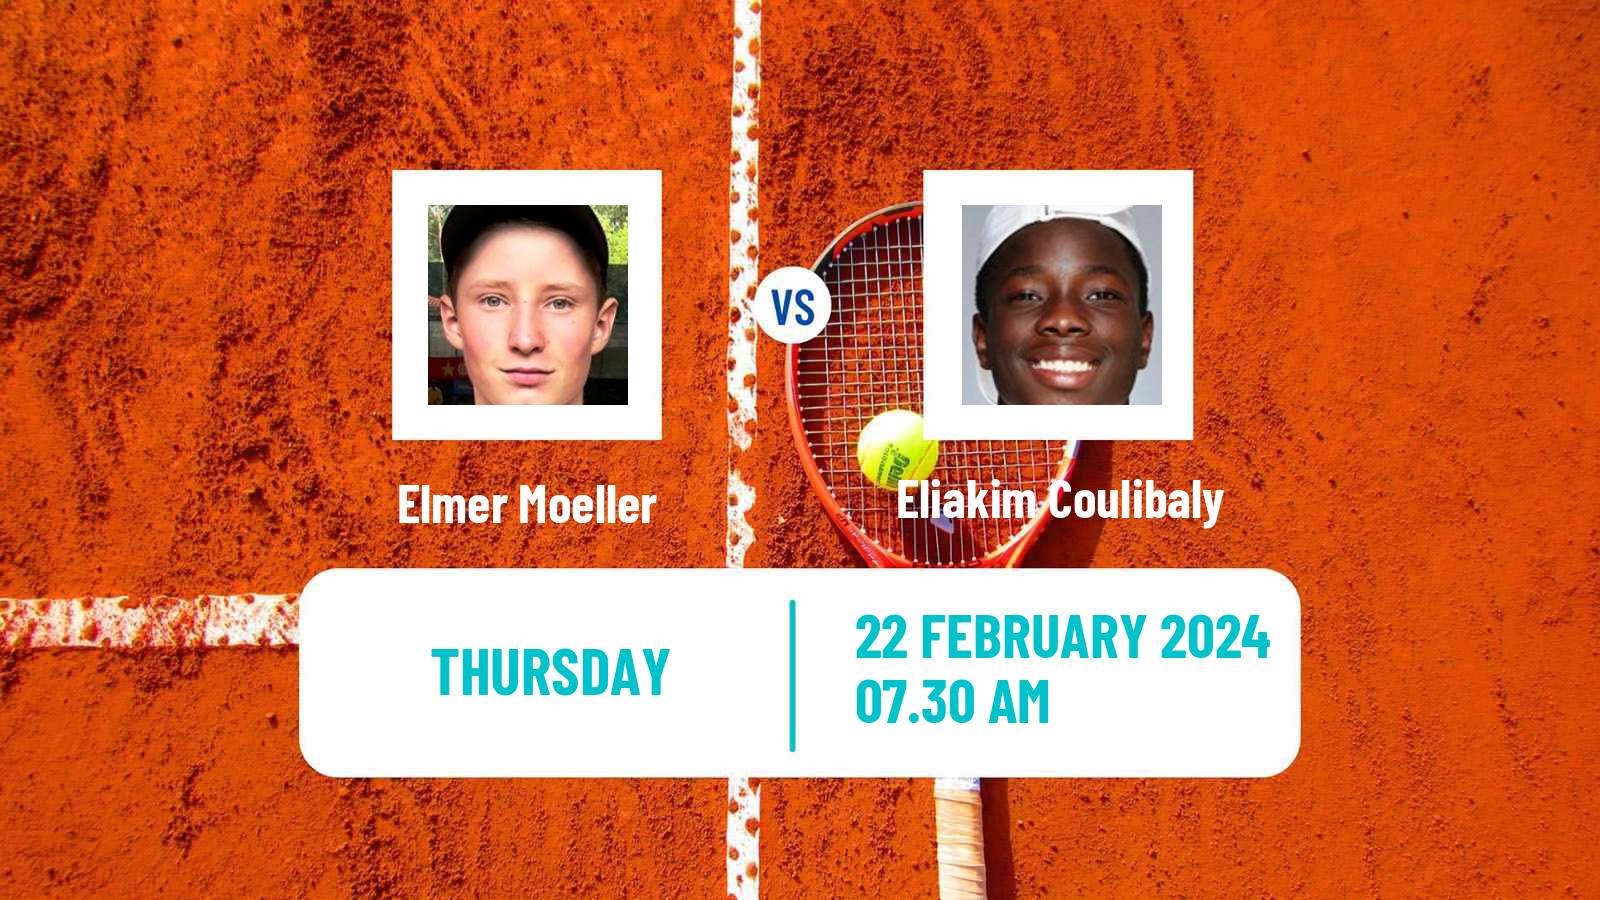 Tennis ITF M25 Vila Real De Santo Antonio 2 Men Elmer Moeller - Eliakim Coulibaly